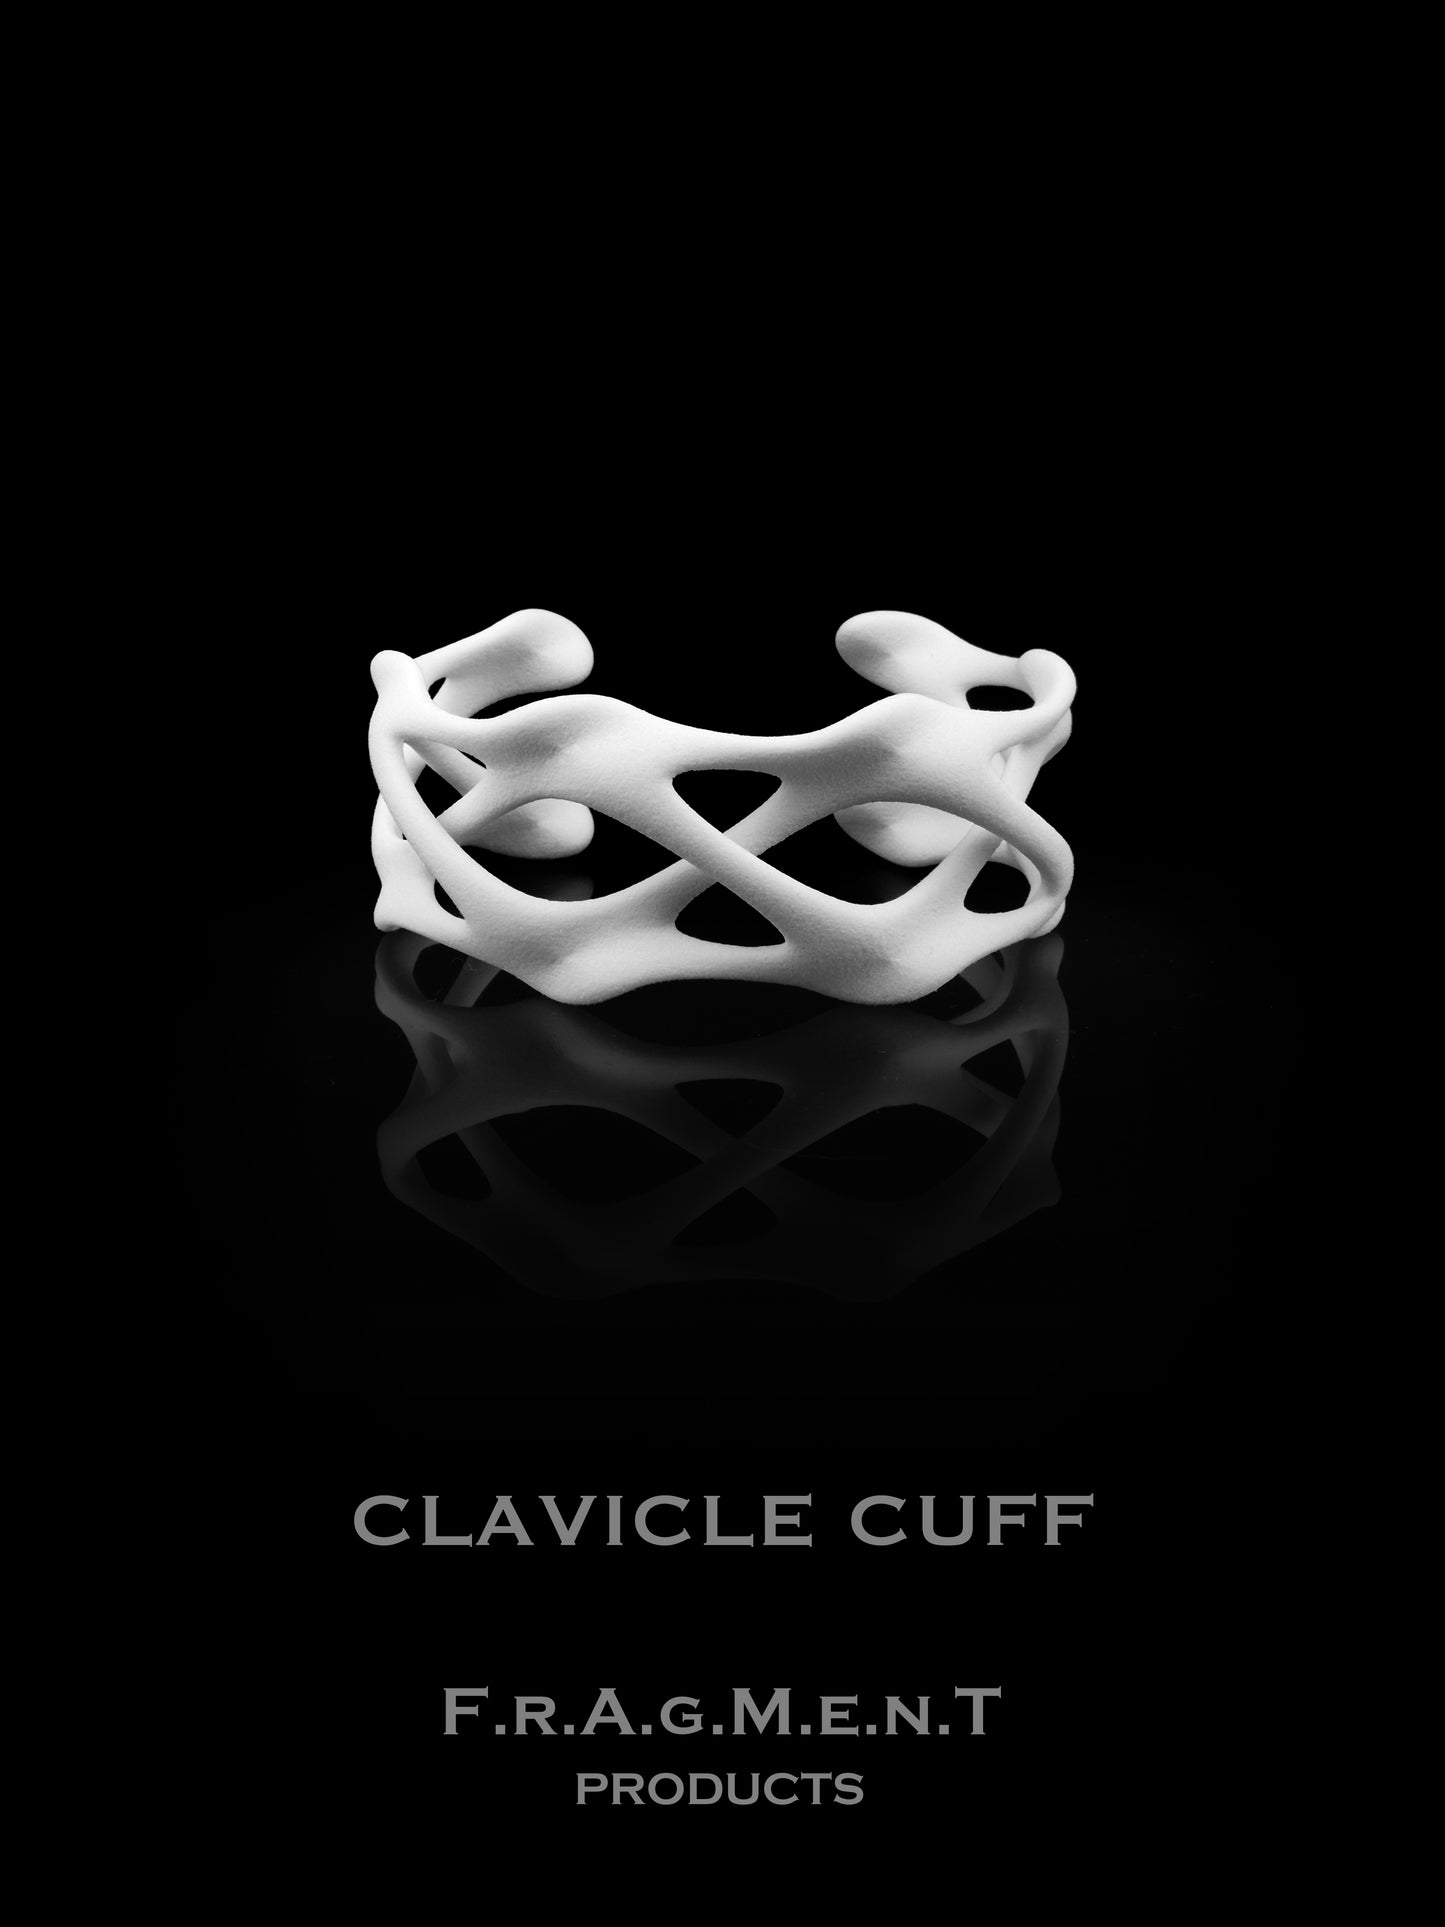 Clavicle Cuff